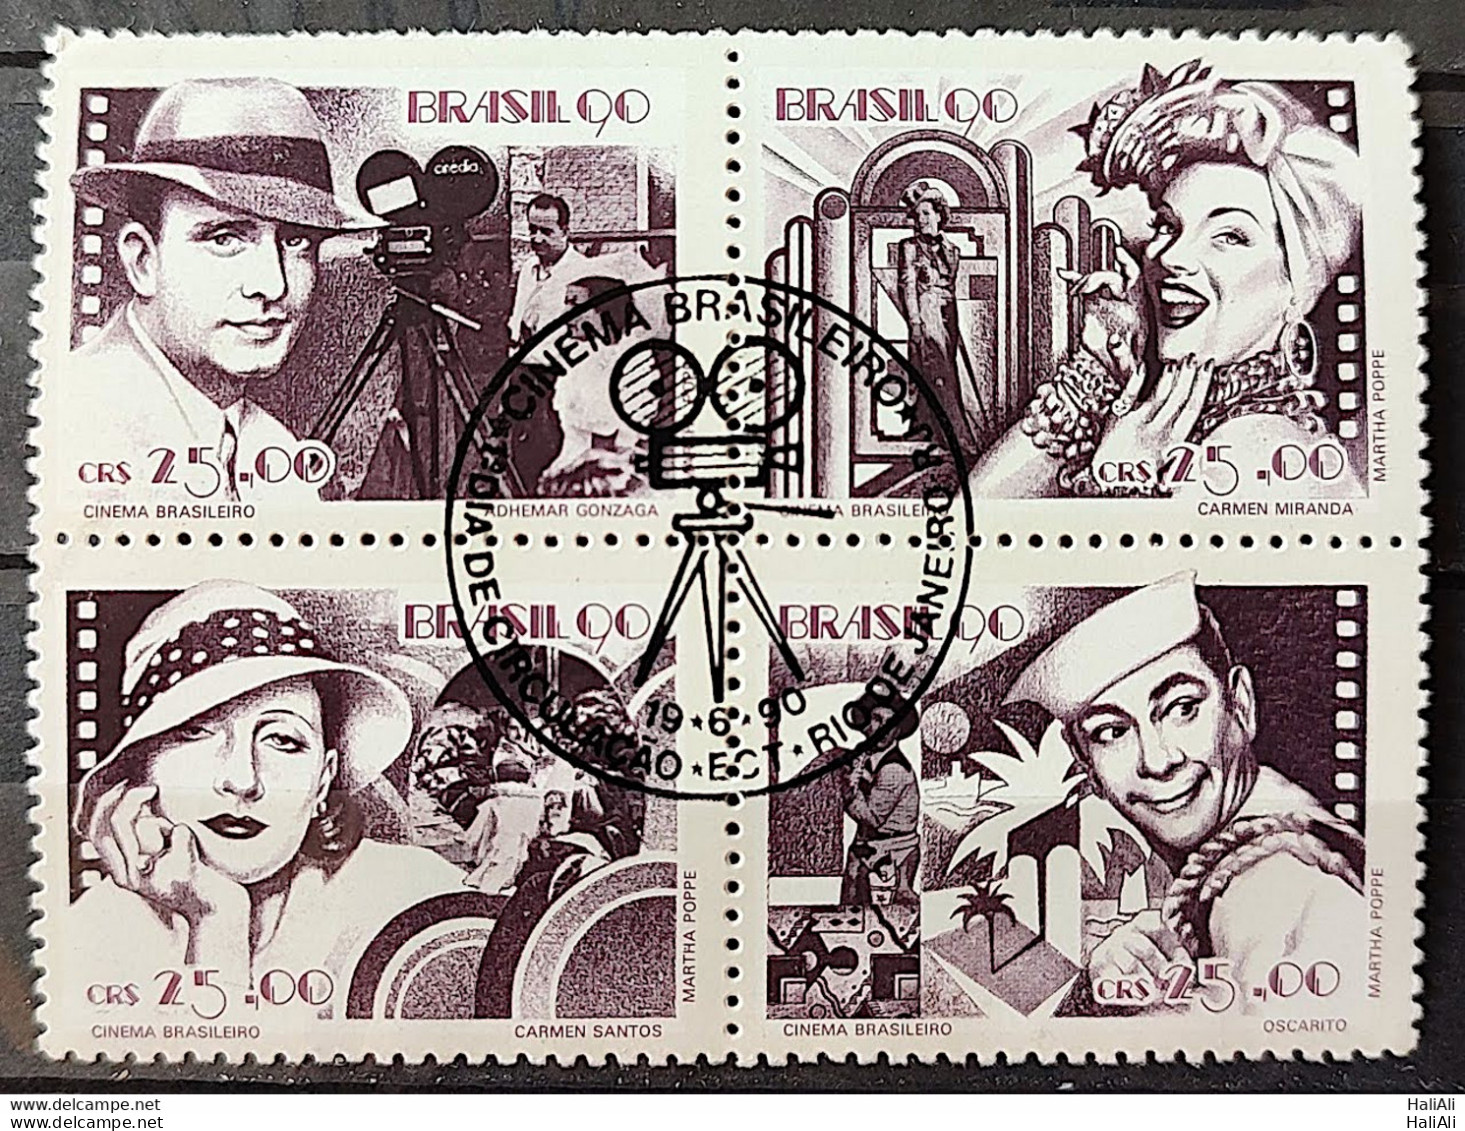 C 1687 Brazil Stamp Brazilian Cinema Gonzaga Carmen Miranda Occarito 1990 Complete Series CBC RJ - Unused Stamps